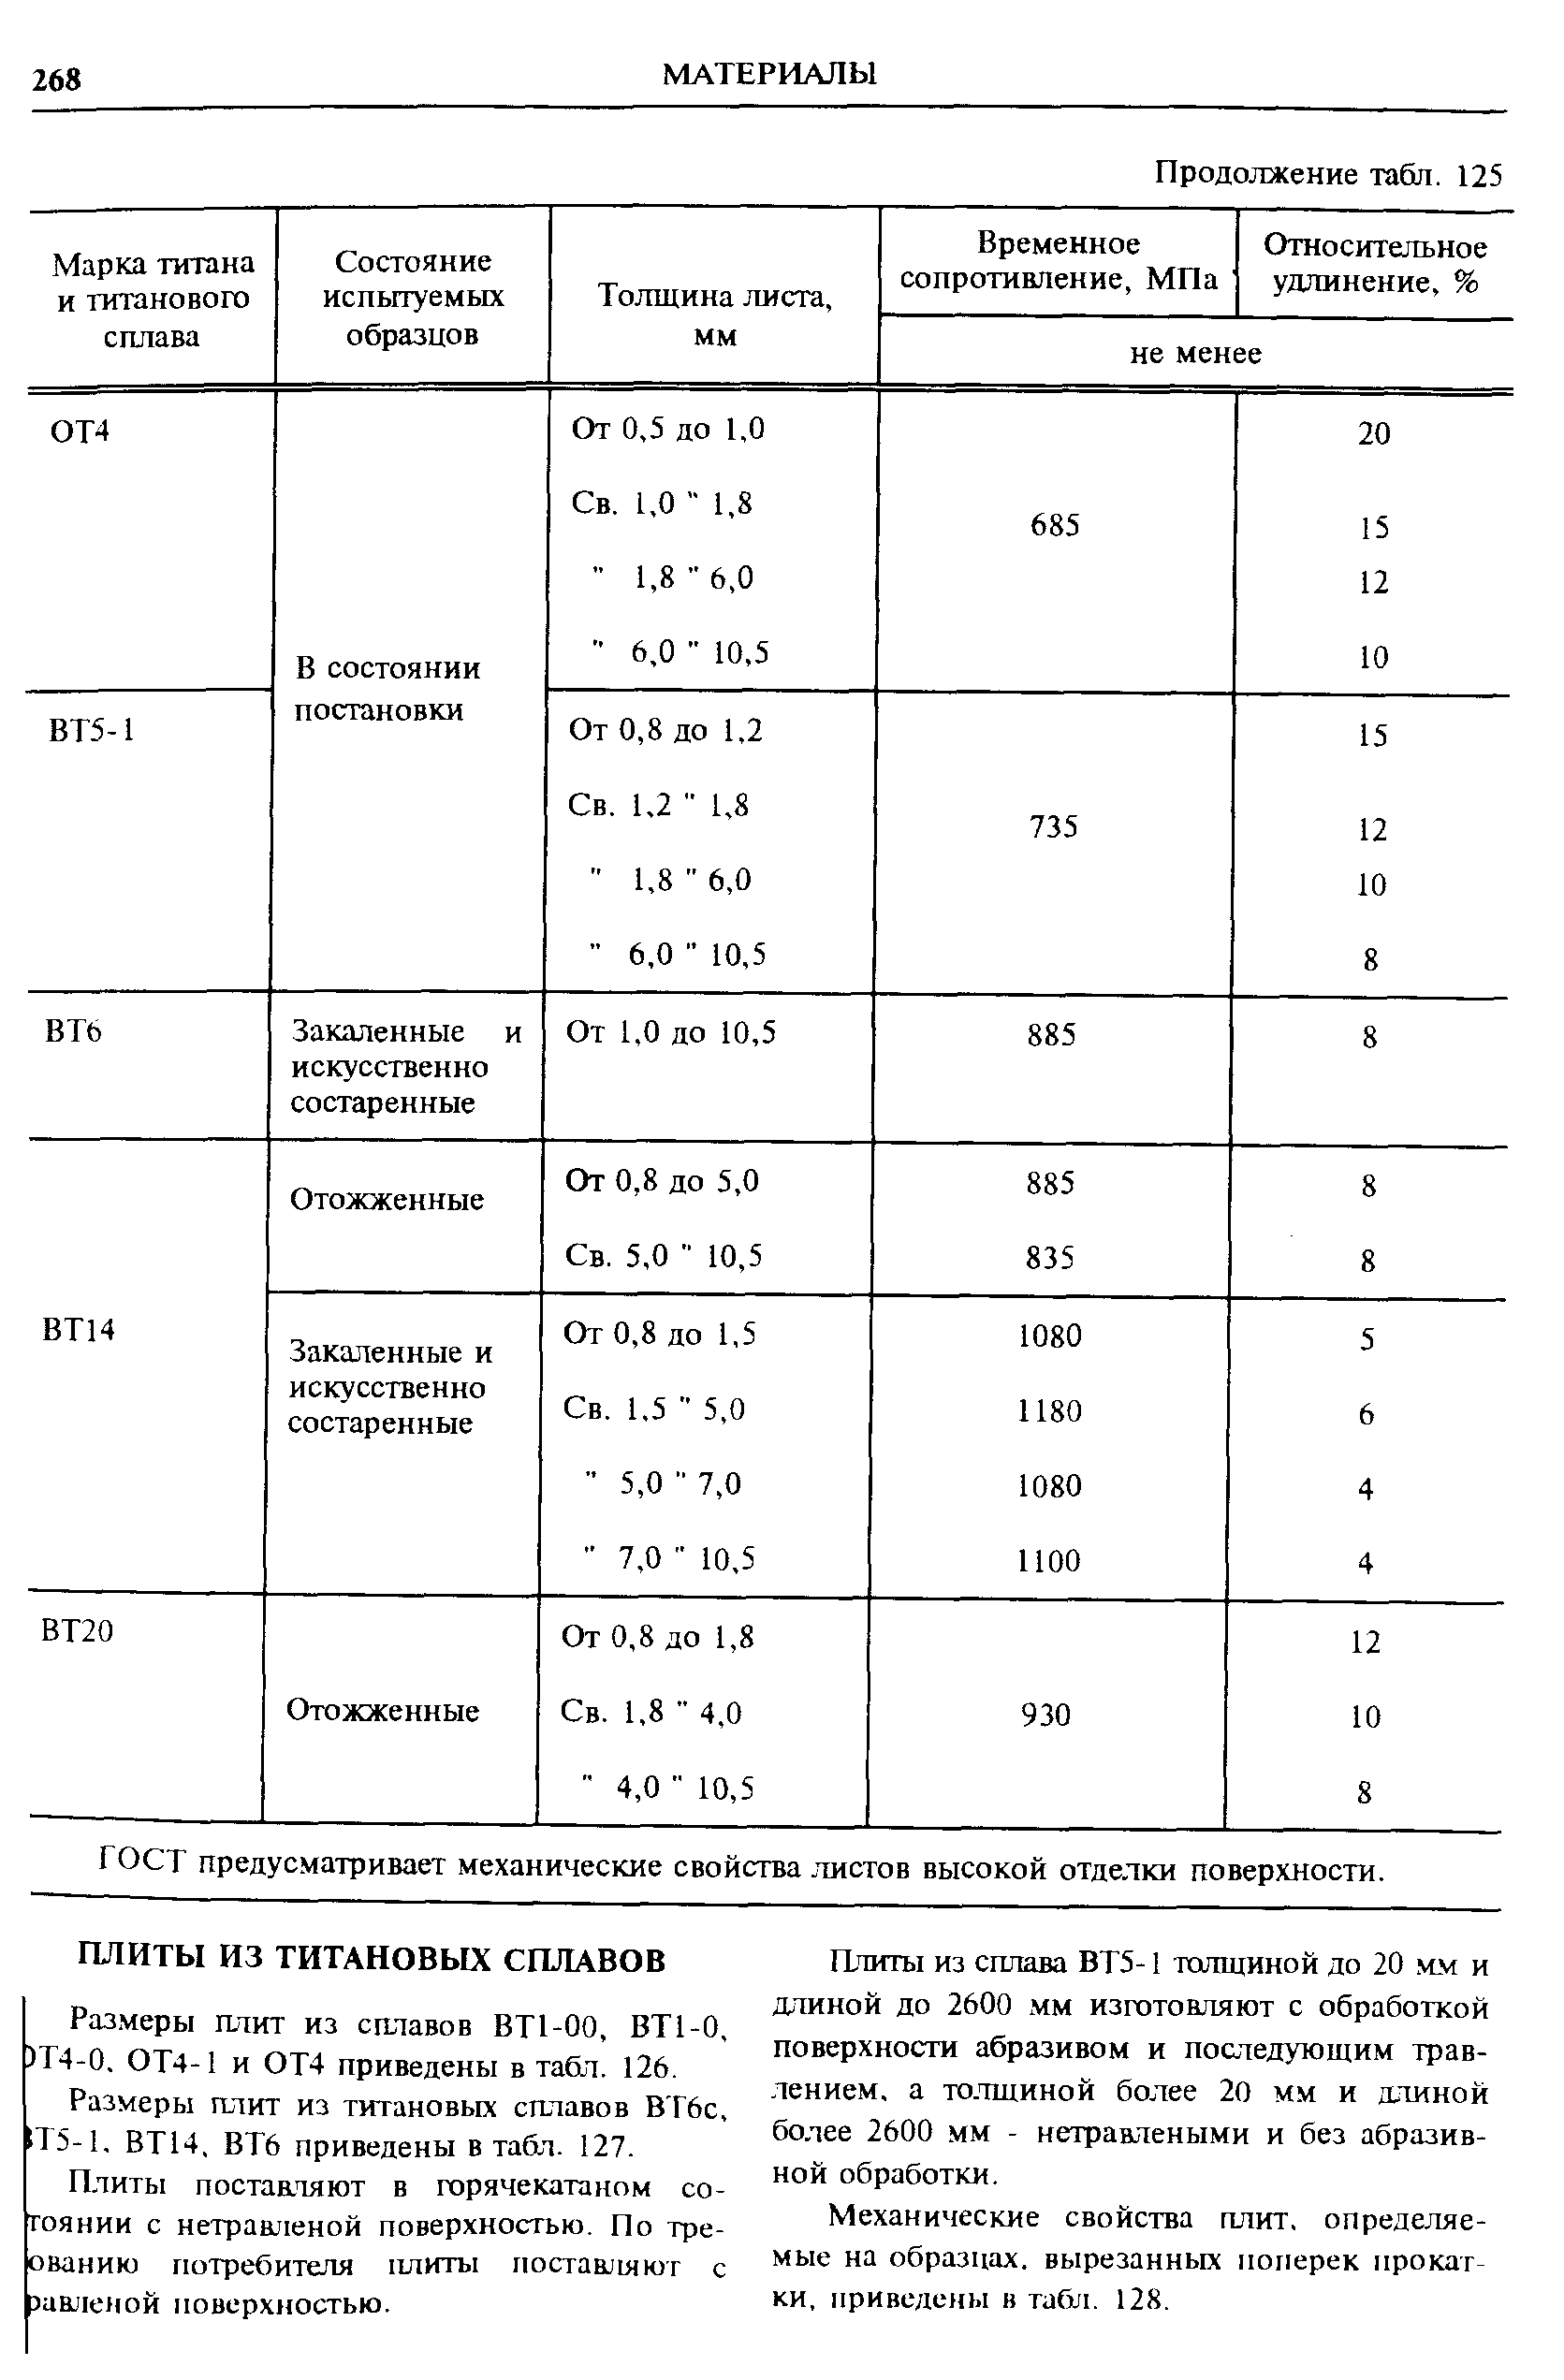 Размеры плит из сплавов ВТ1-00, ВТ1-0, )Т4-0. ОТ4-1 и ОТ4 приведены в табл. 126.